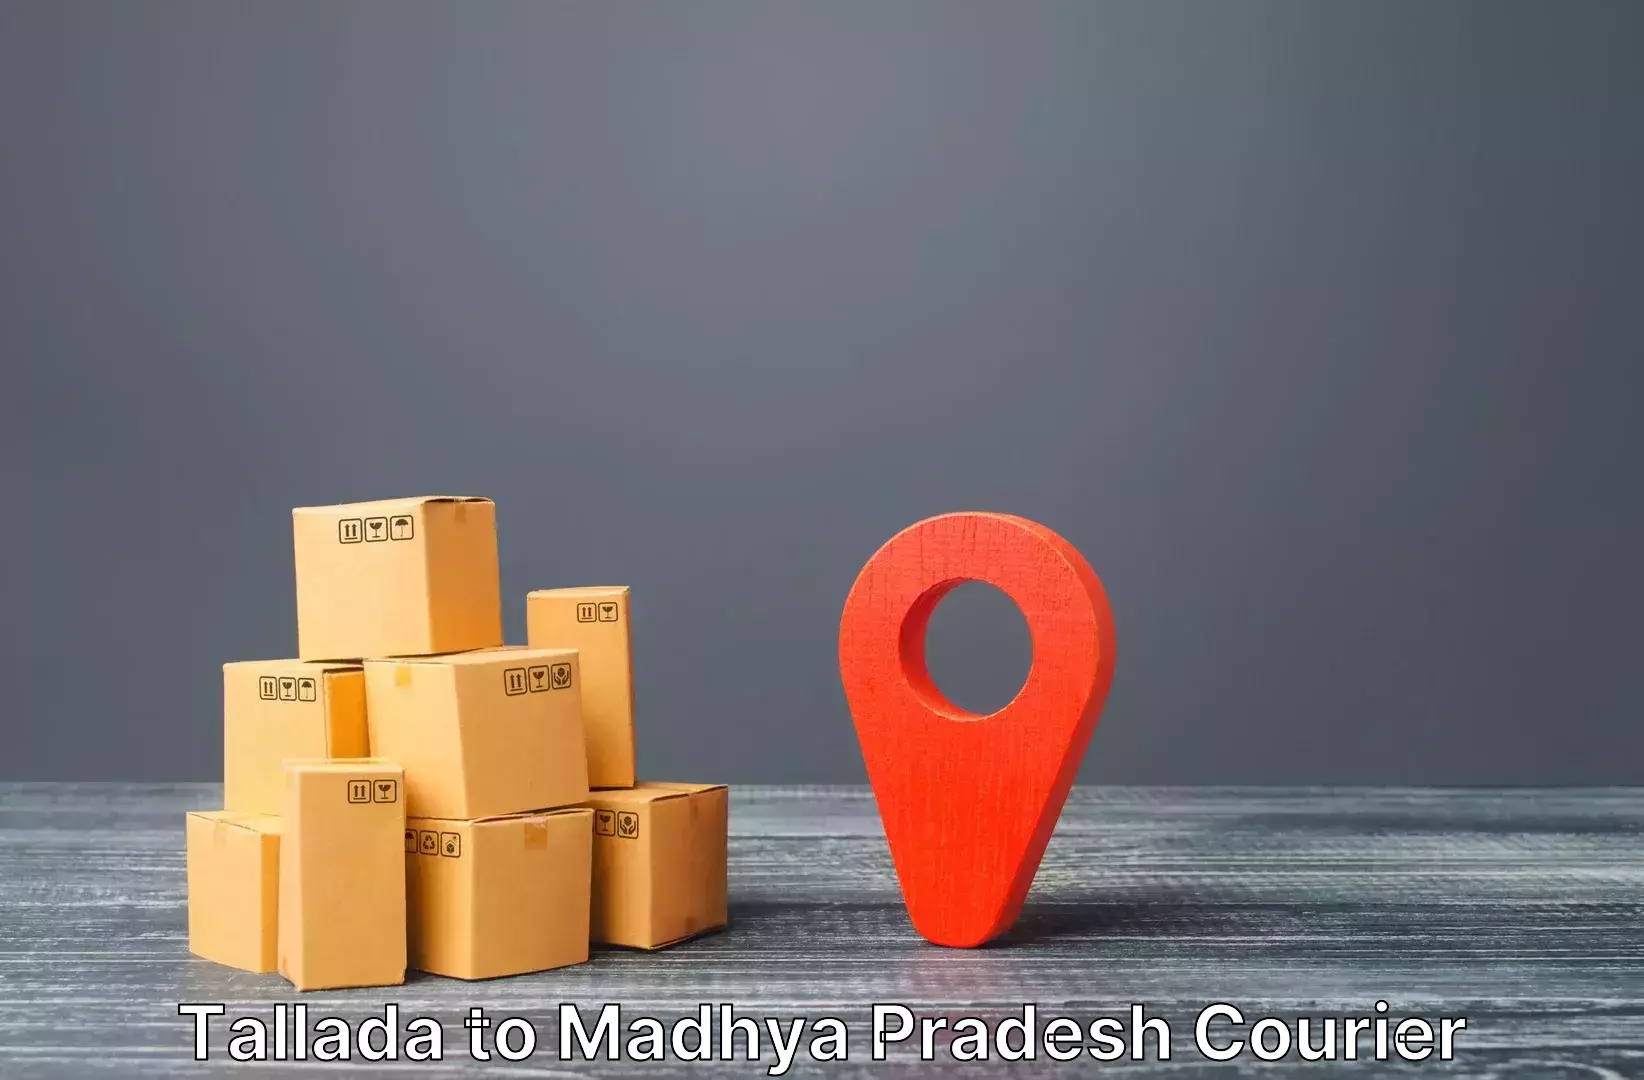 Long distance luggage transport in Tallada to Niwari